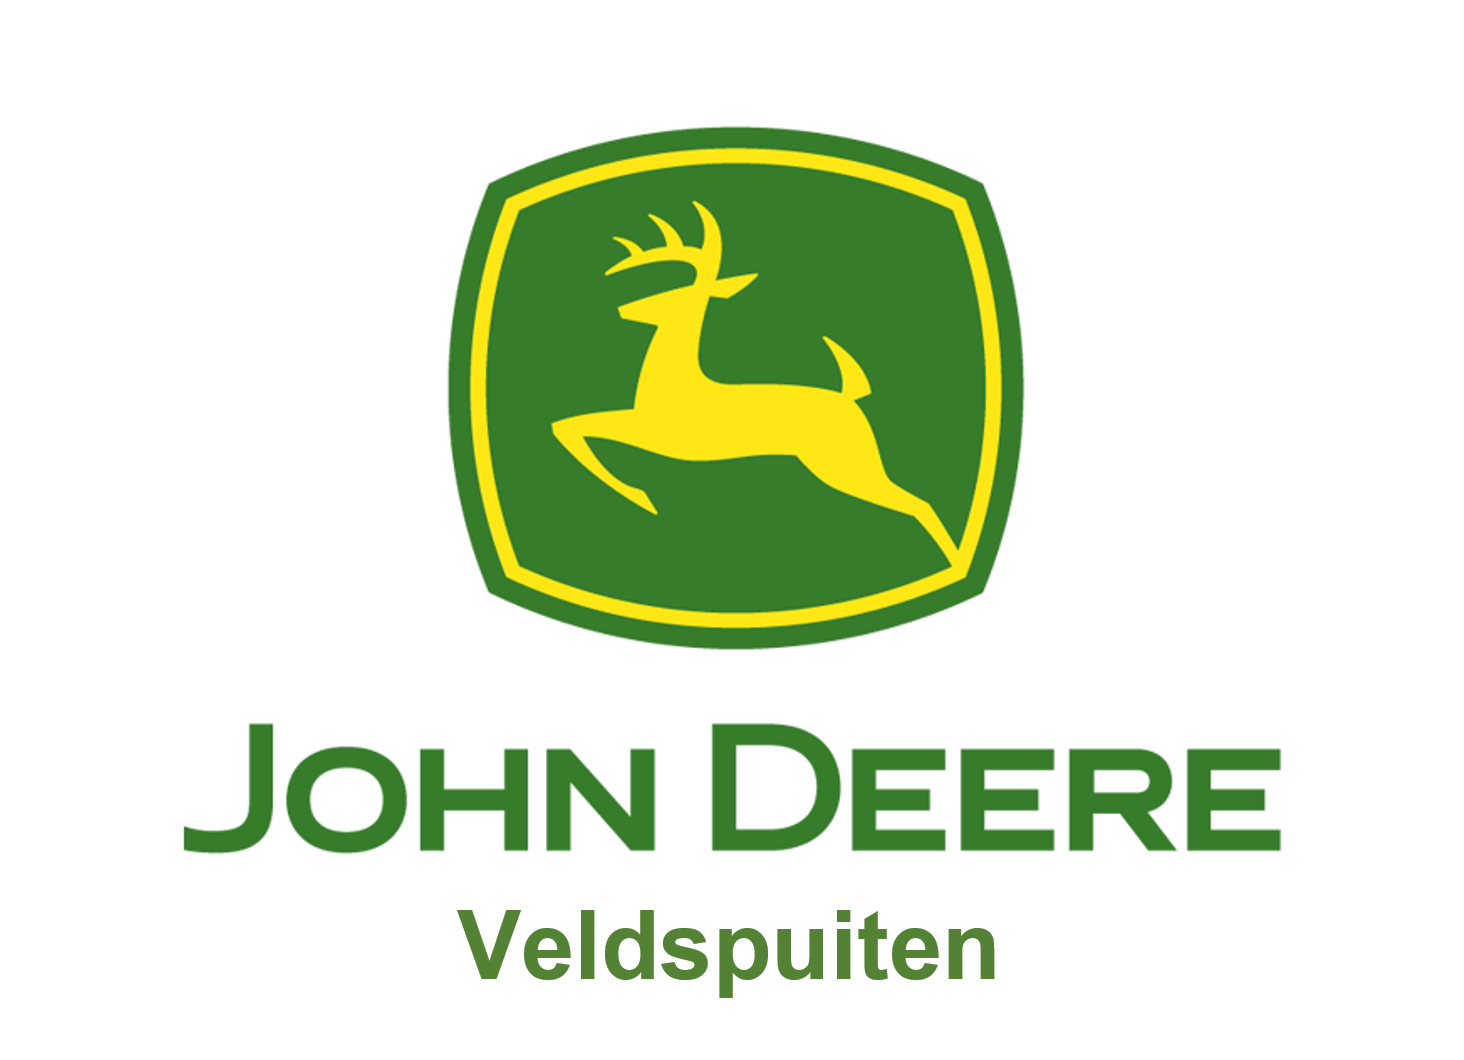 John Deere Veldspuiten